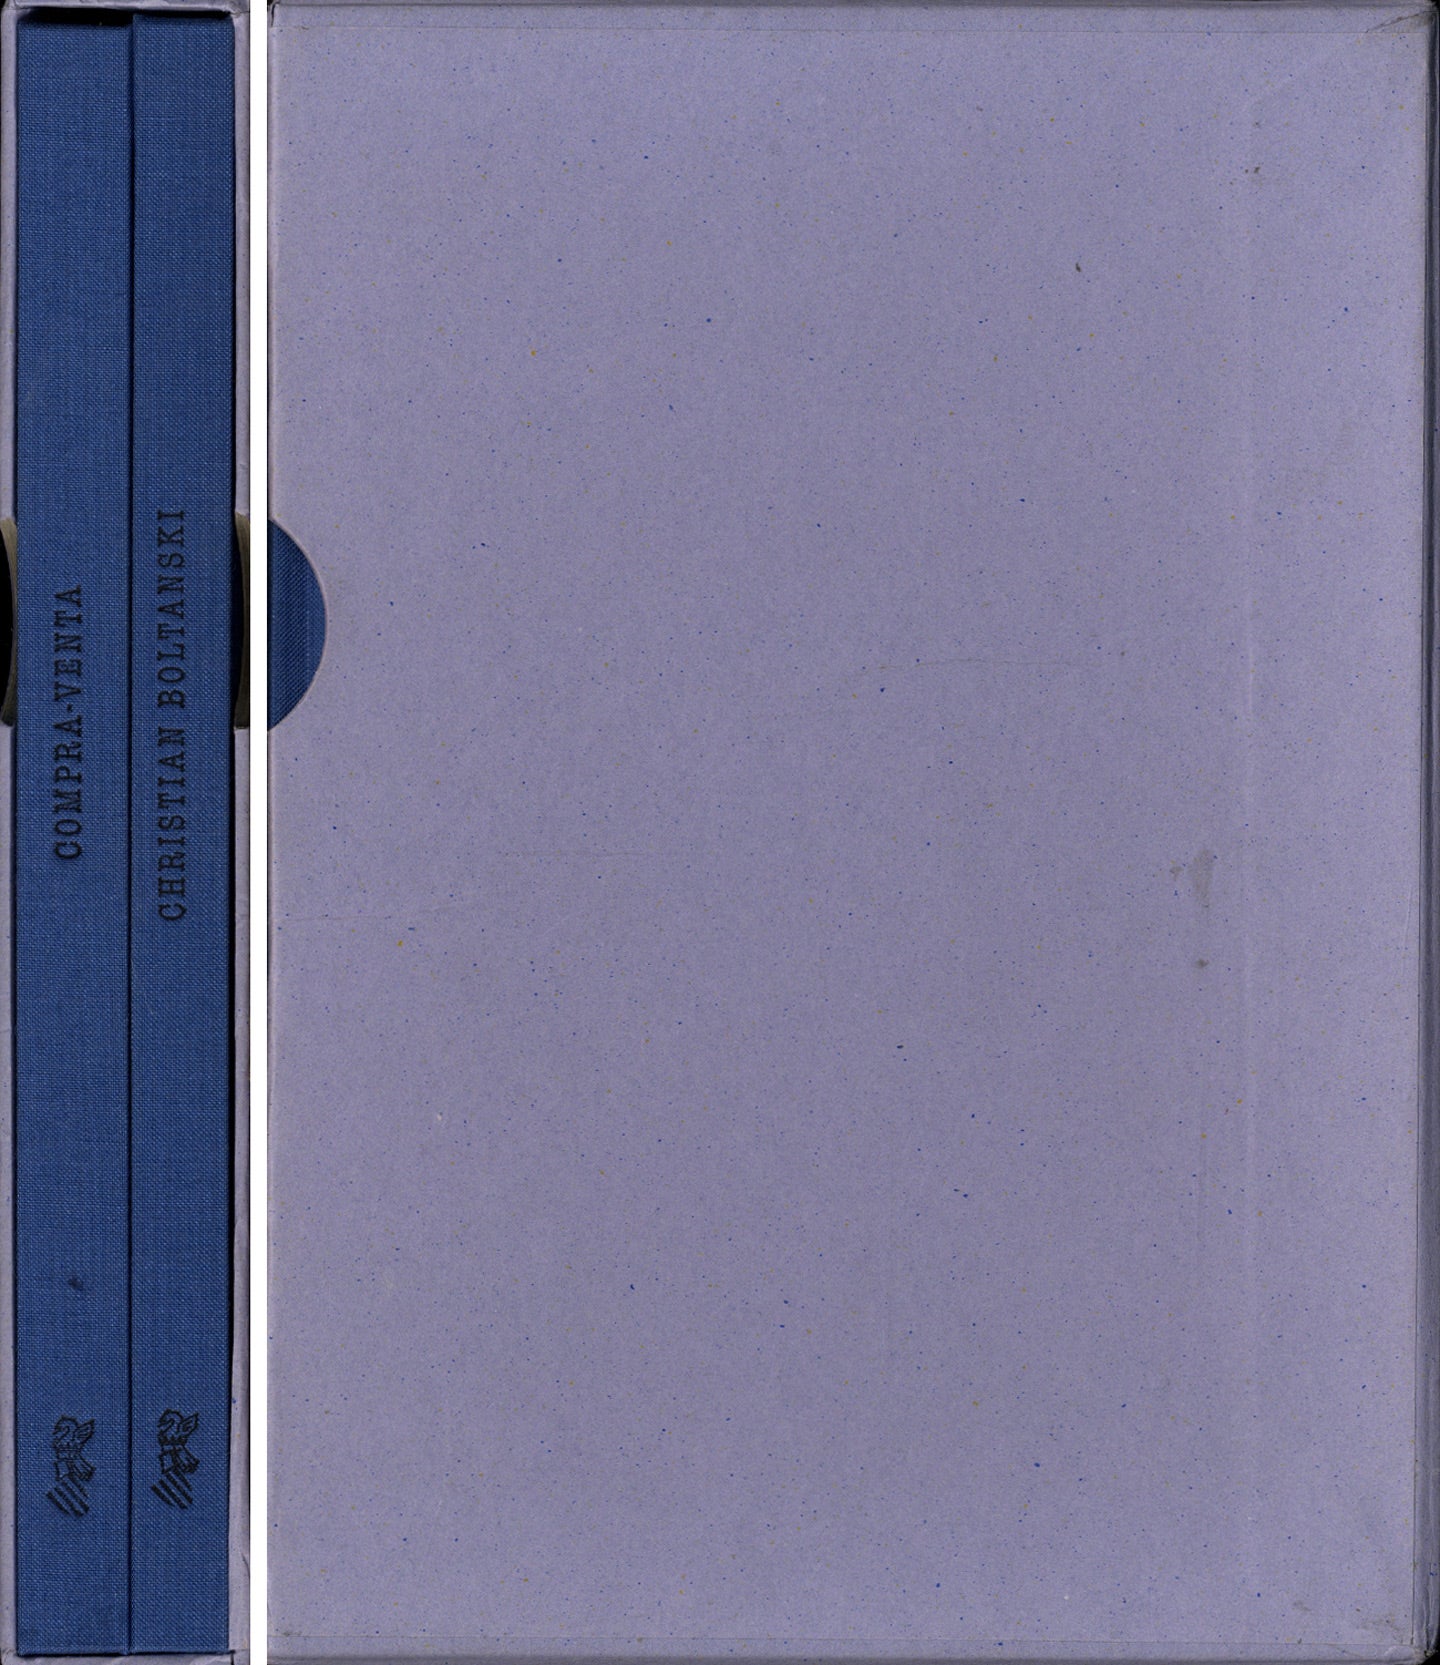 Christian Boltanski: Compra-Venta (Buy-Sell) (Two Volumes Slipcased)